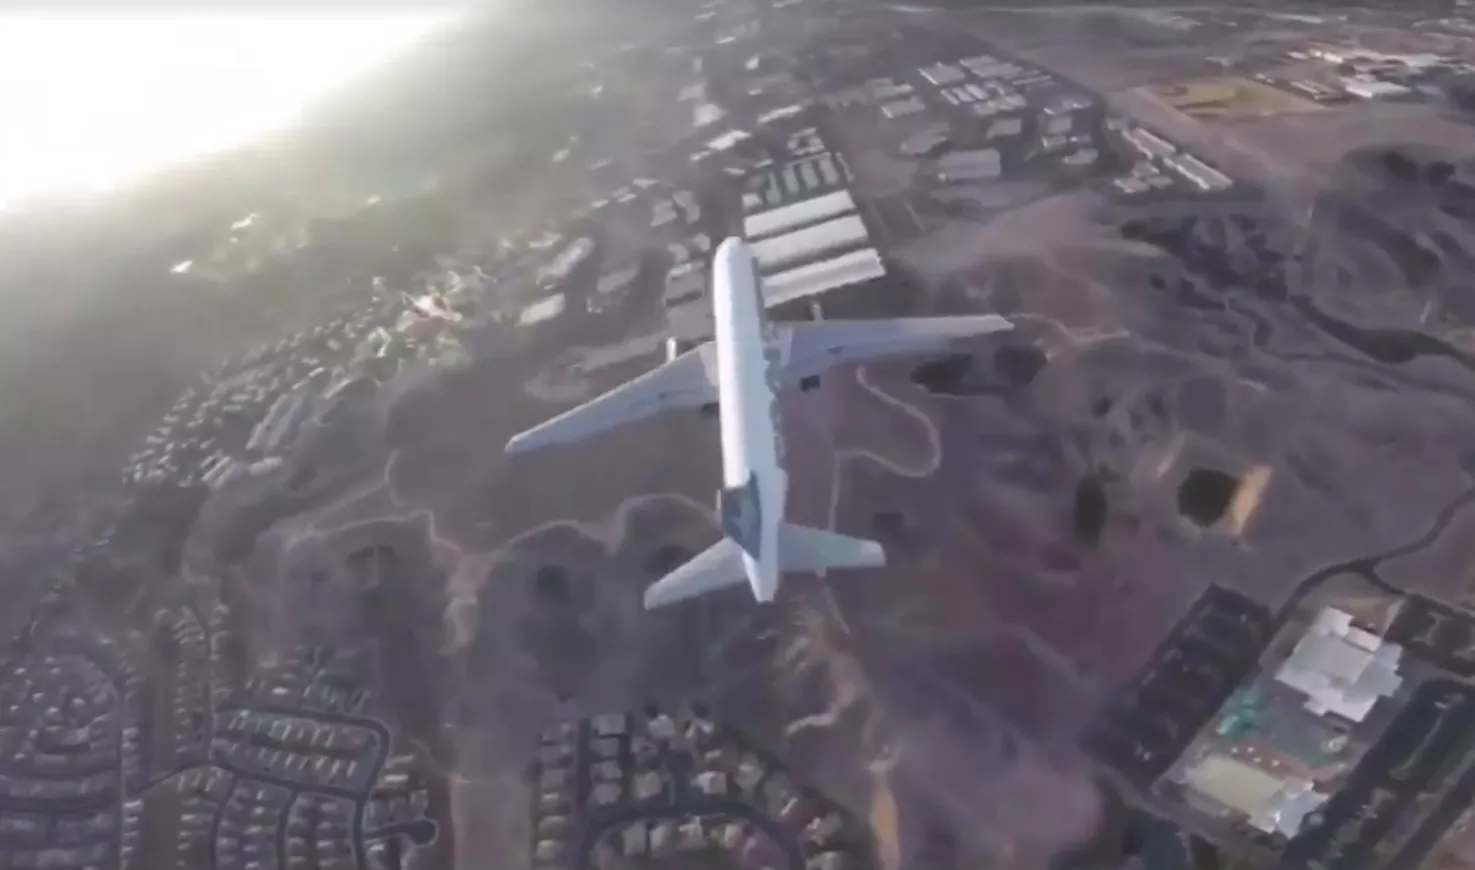 Пилота этого дрона могут оштрафовать на $250 тысяч или посадить на 3 года (видео)